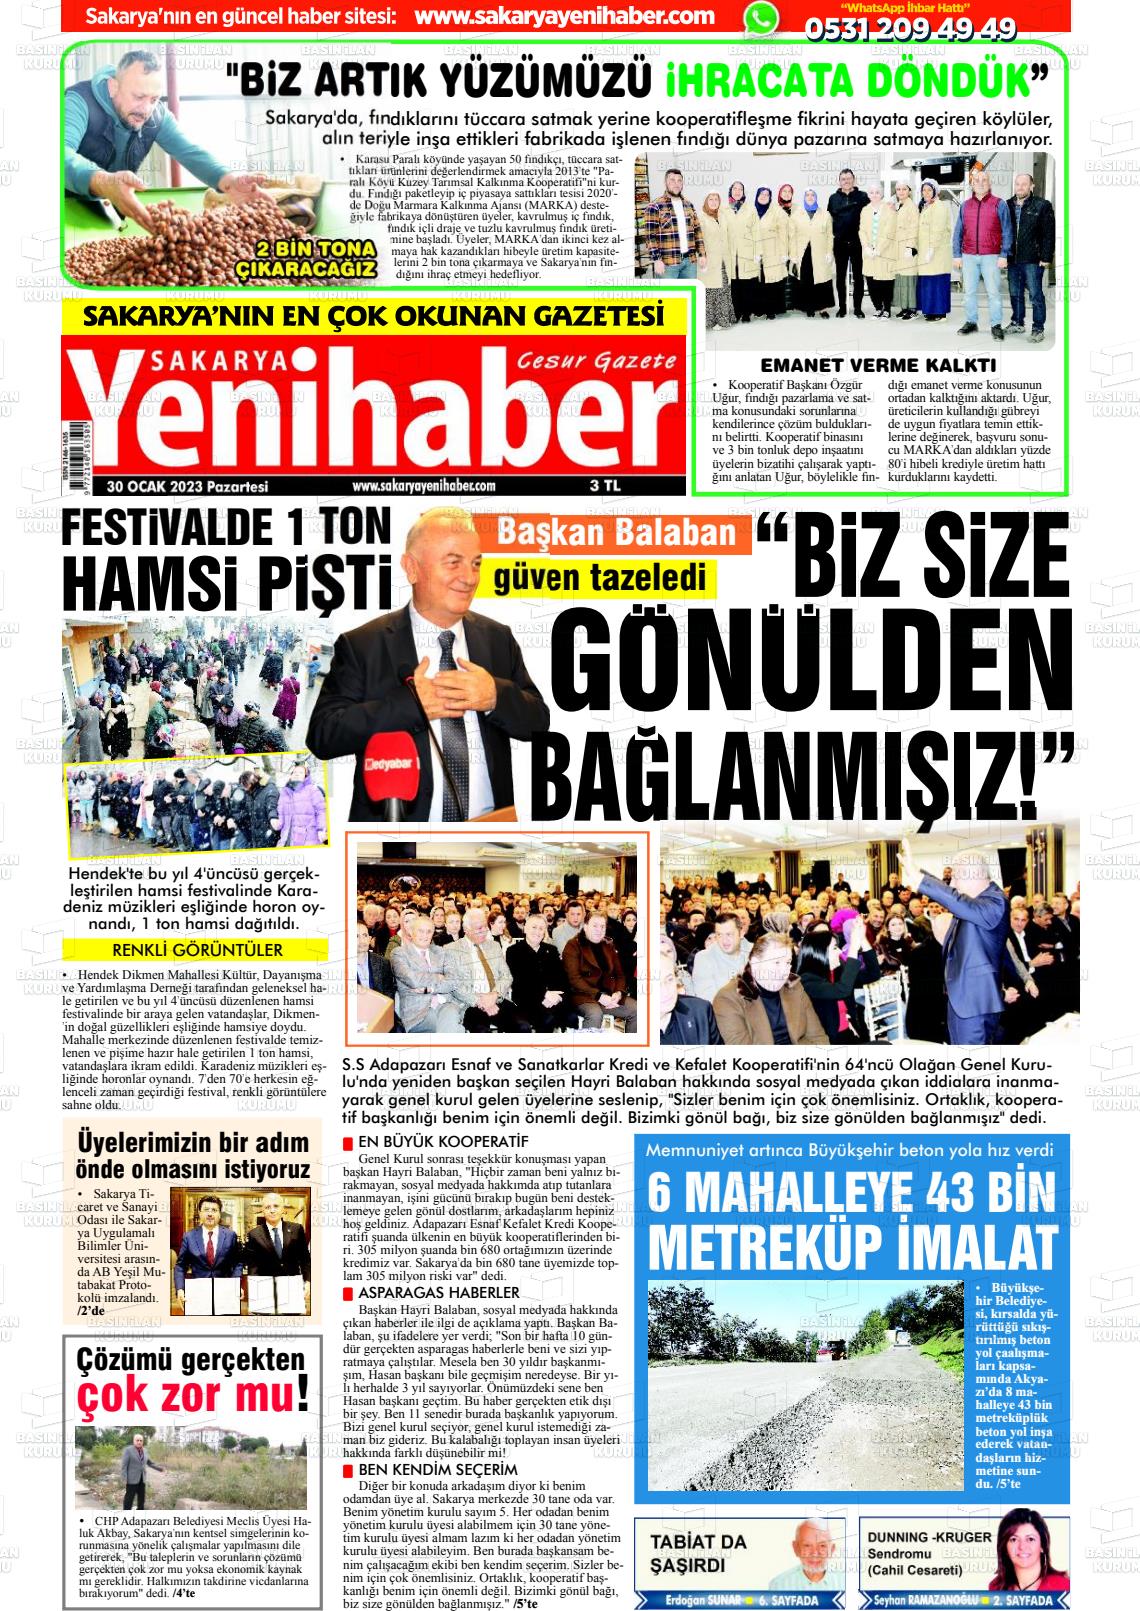 30 Ocak 2023 Sakarya Yeni Haber Gazete Manşeti